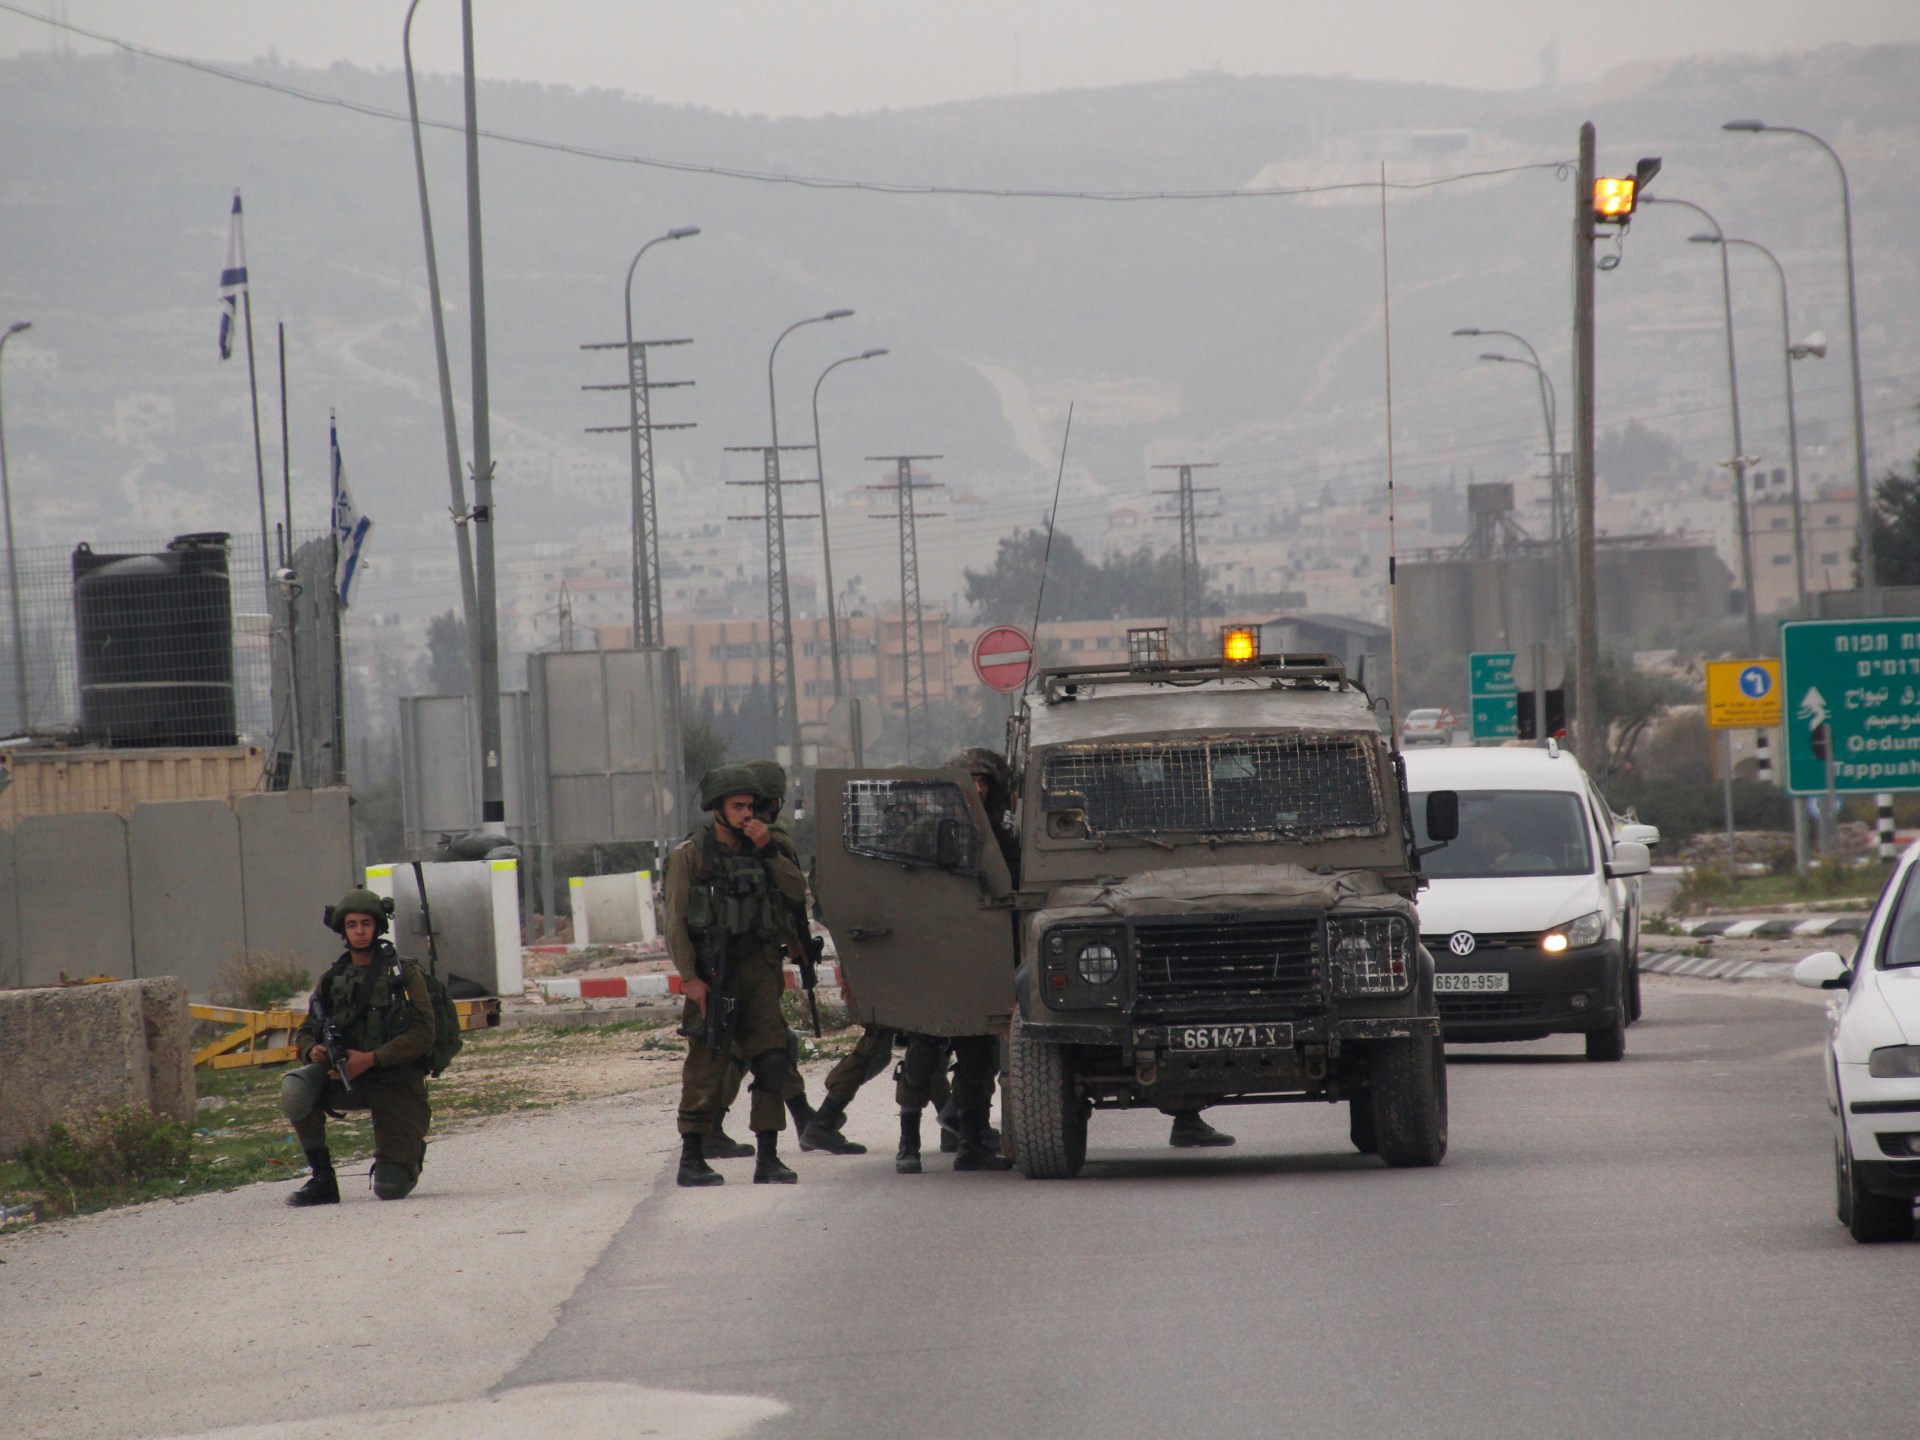 قوات الاحتلال تقتحم مخيم بلاطة في نابلس | أخبار – البوكس نيوز